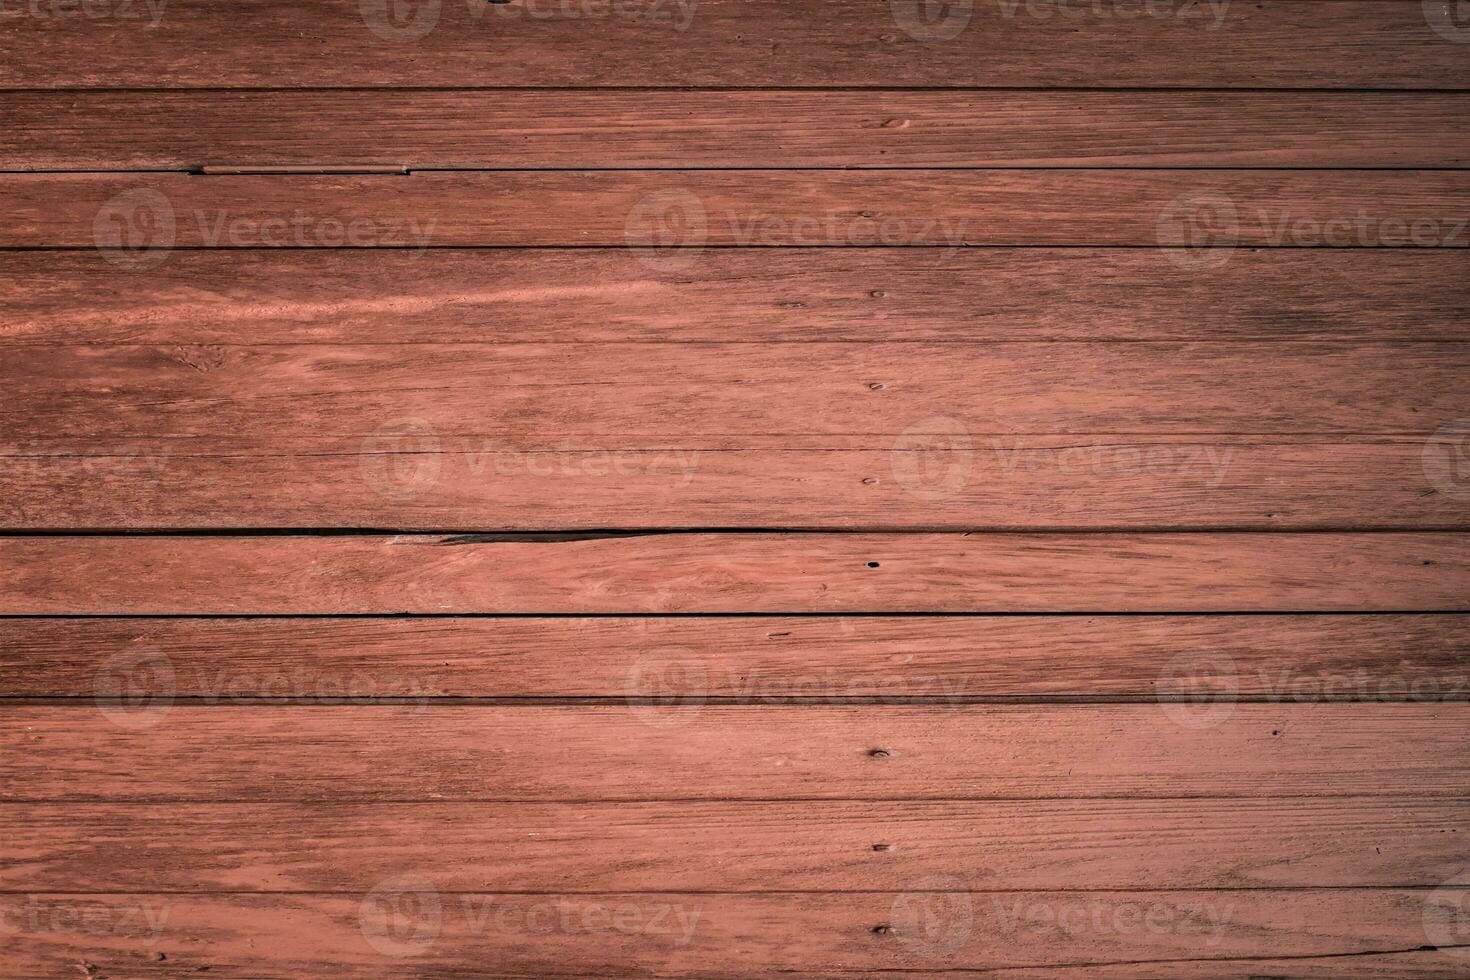 texture en bois brun foncé, vieilles planches de bois. photo